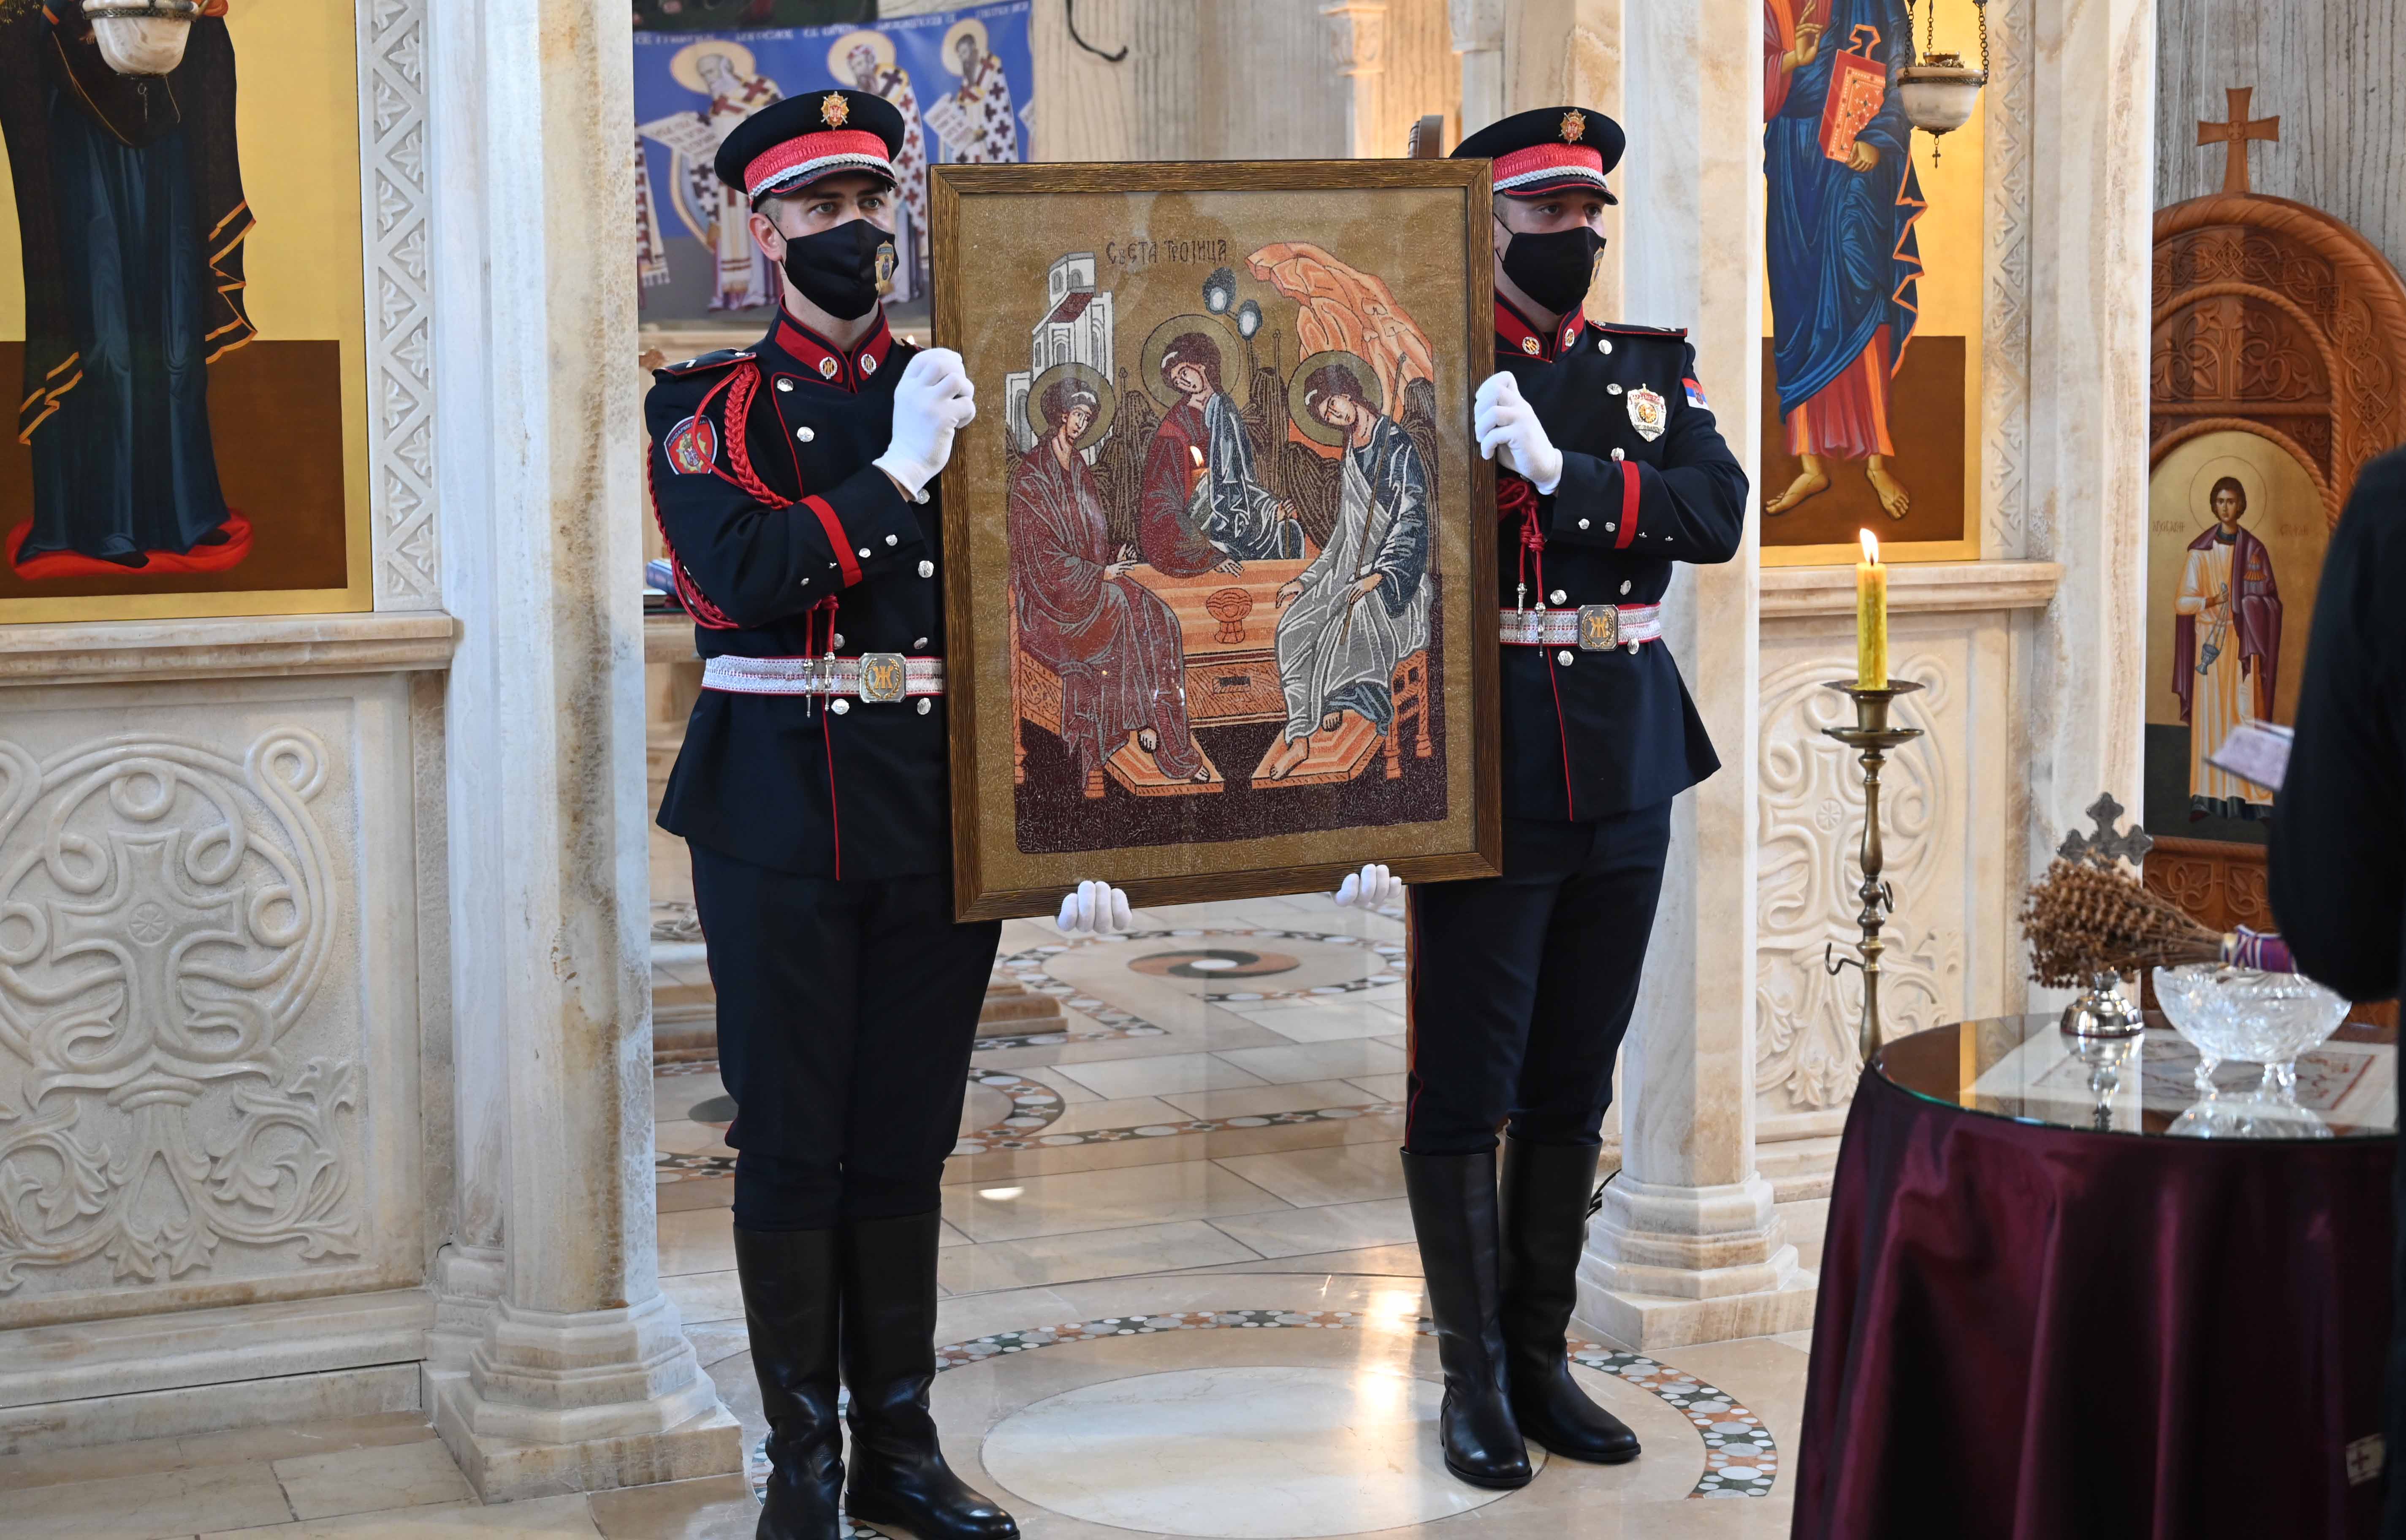  Ученици Основне школе из Руме поклонили министру Вулину икону Свете Тројице коју су сами израдили   